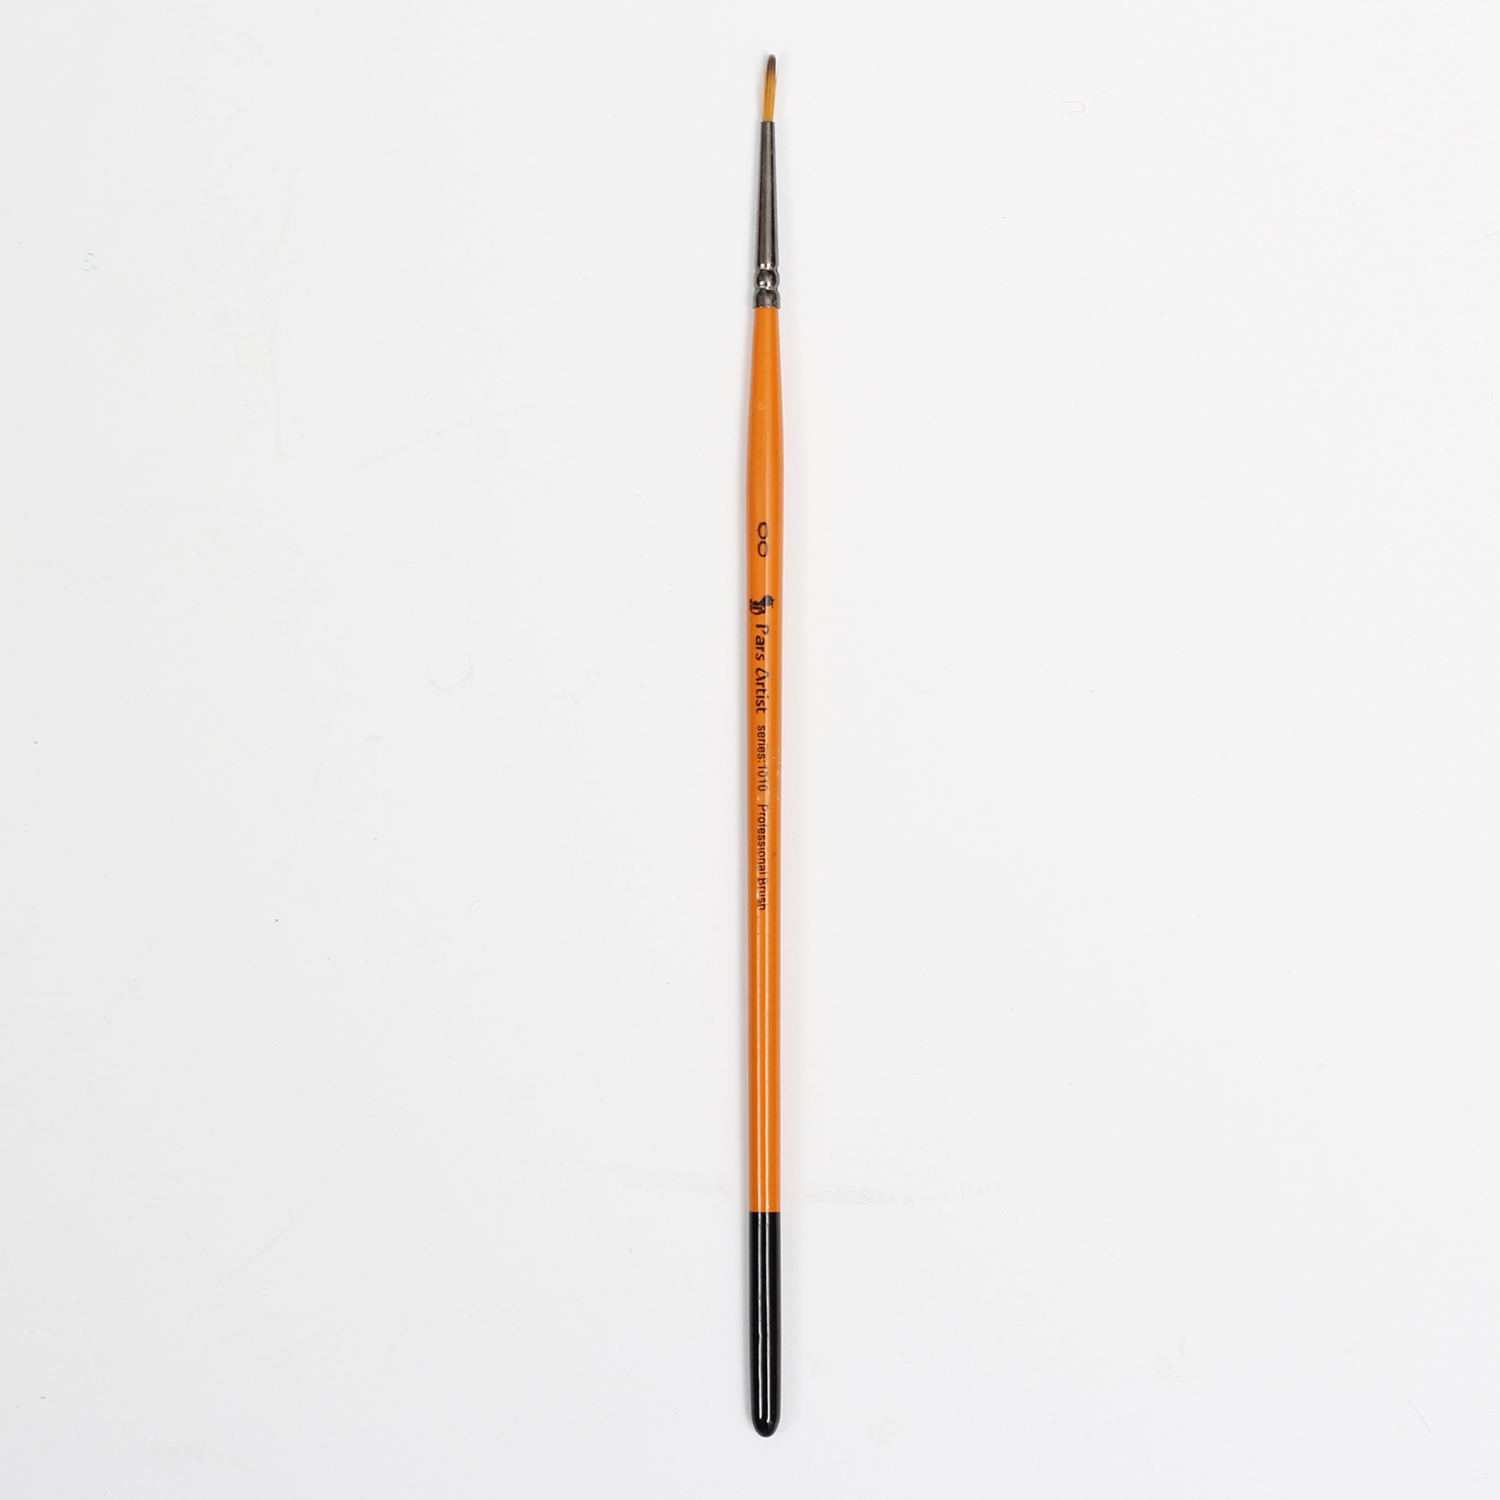 قلم مو پارس آرتیست شماره 2.0 کد 1010 